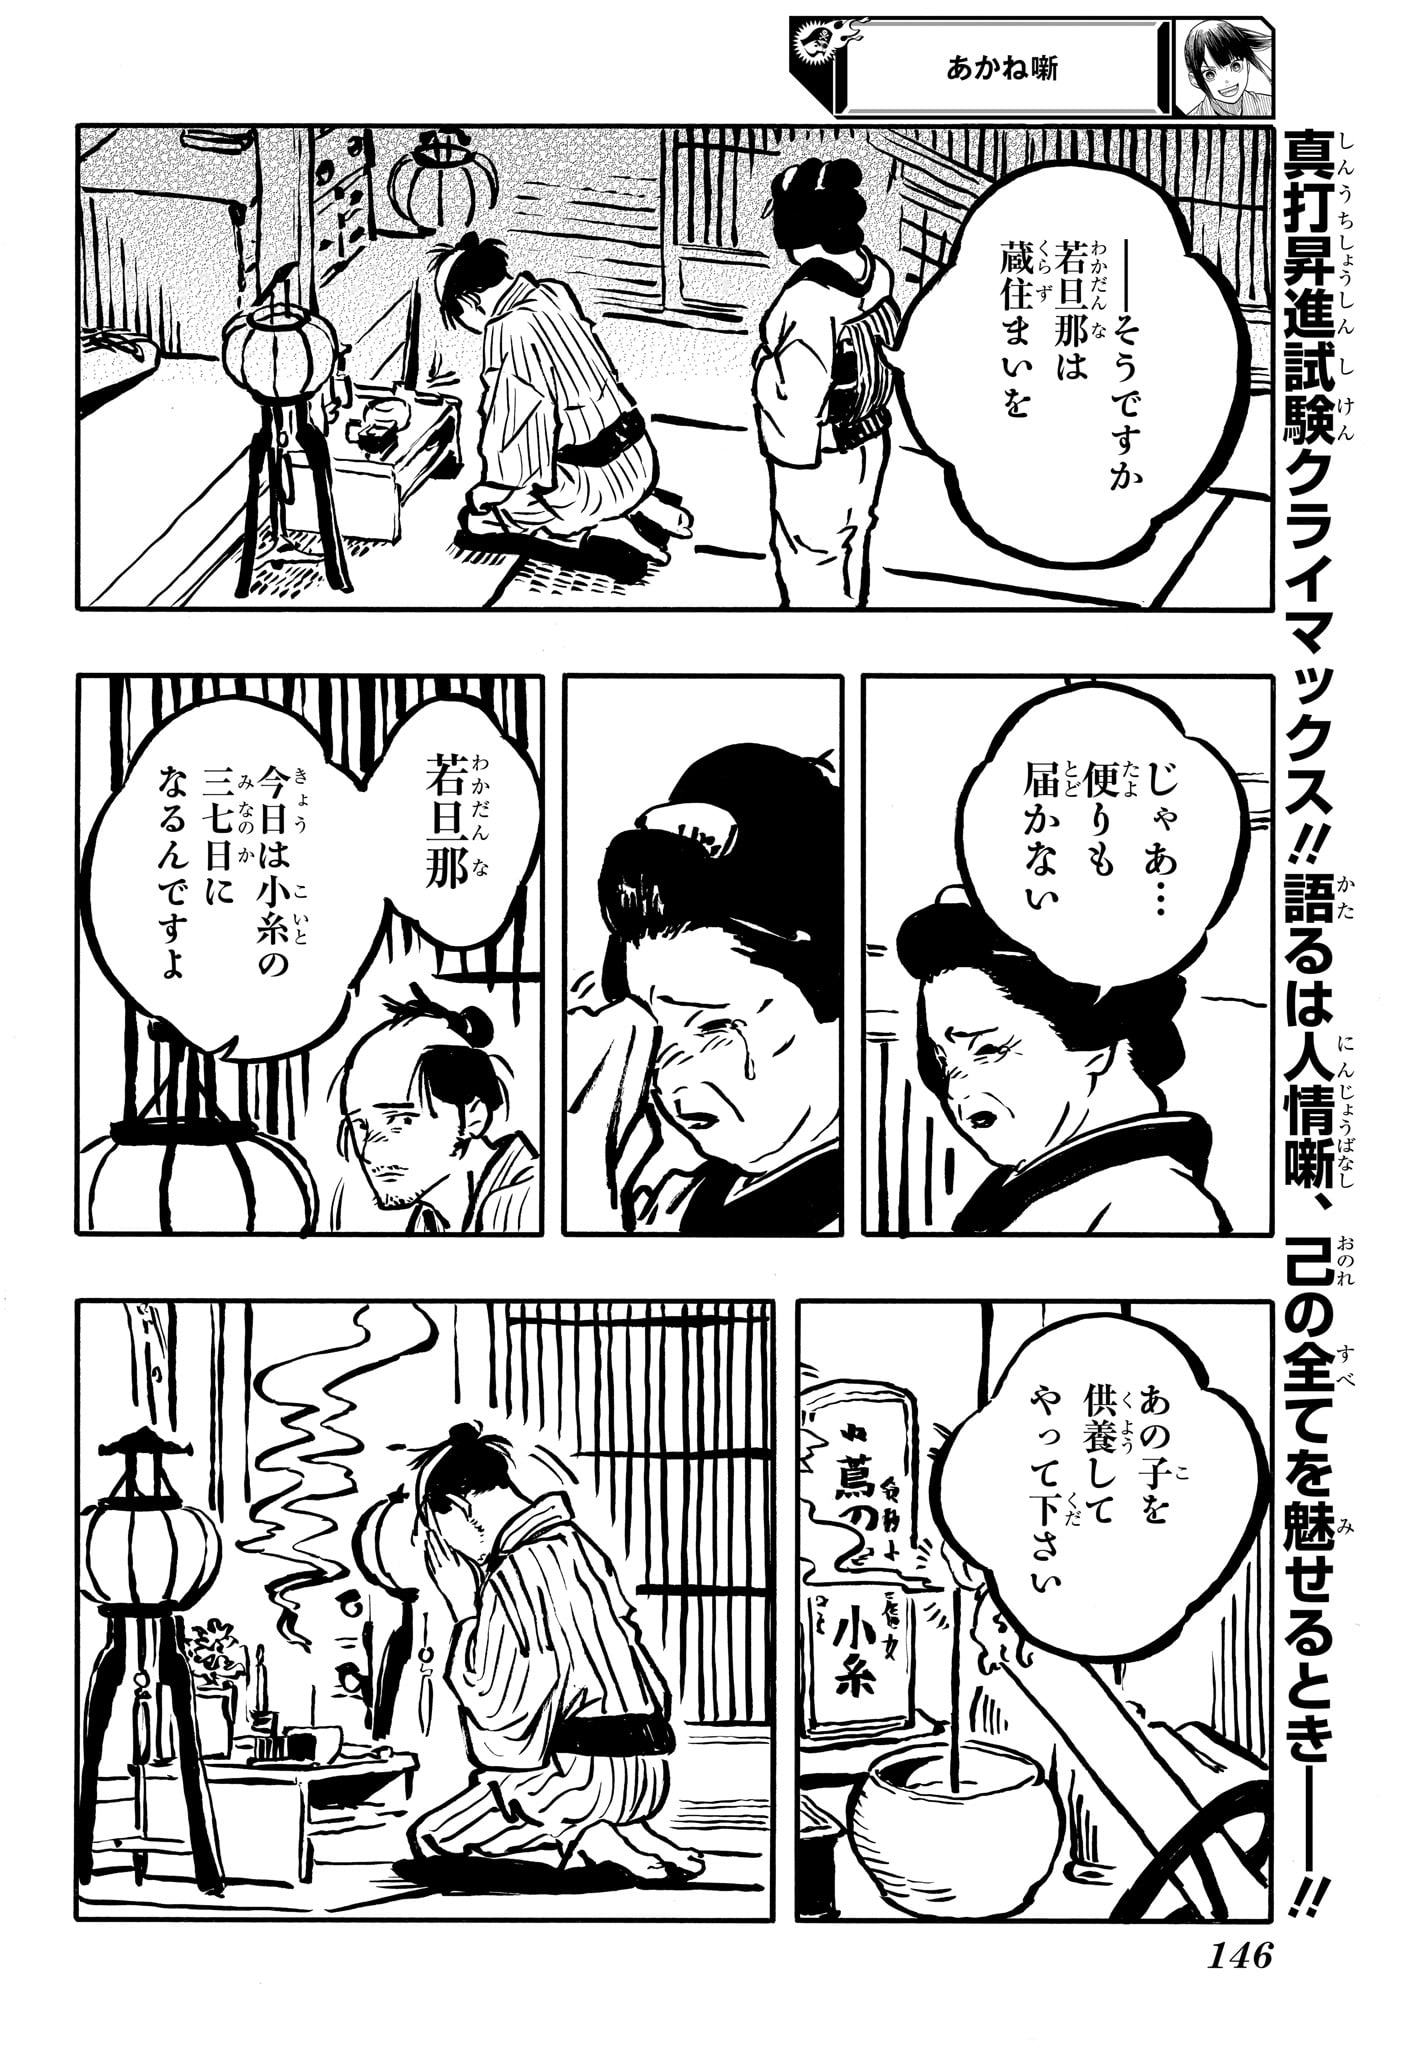 Akane-Banashi - Chapter 115 - Page 2